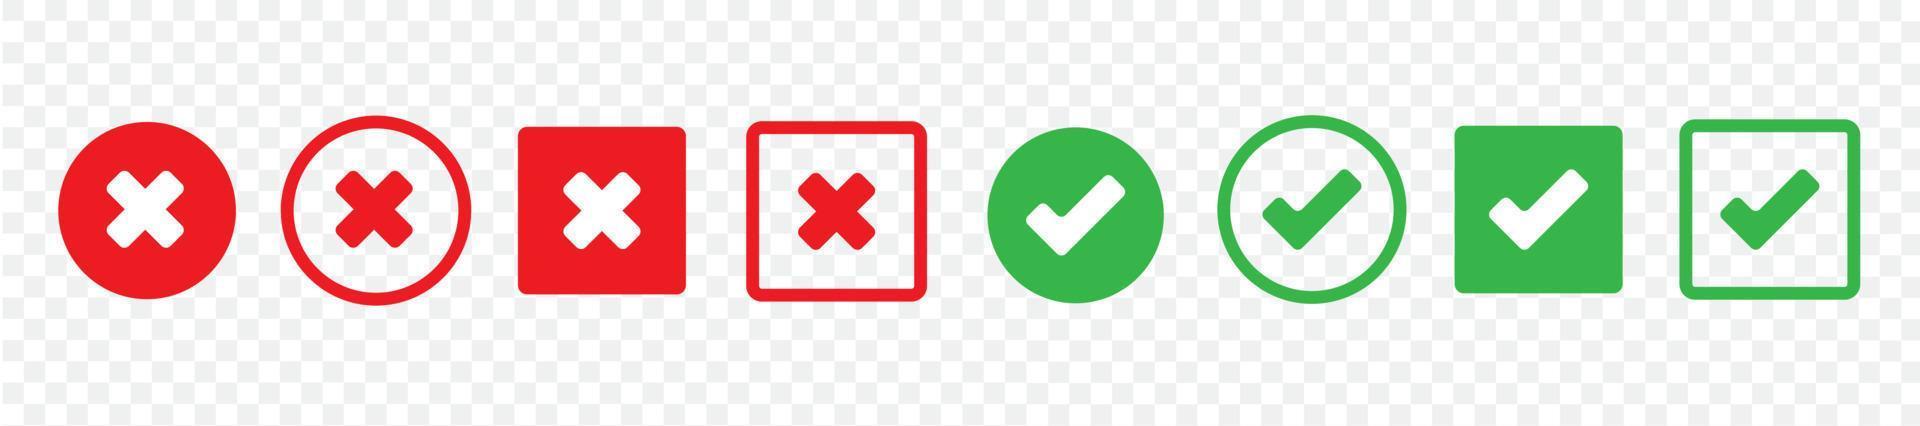 Setzen Sie grüne Häkchen und rote Kreuze von einfachen Web-Buttons. Kreis und Quadrat. große Sammlung flacher Knöpfe. Vektor